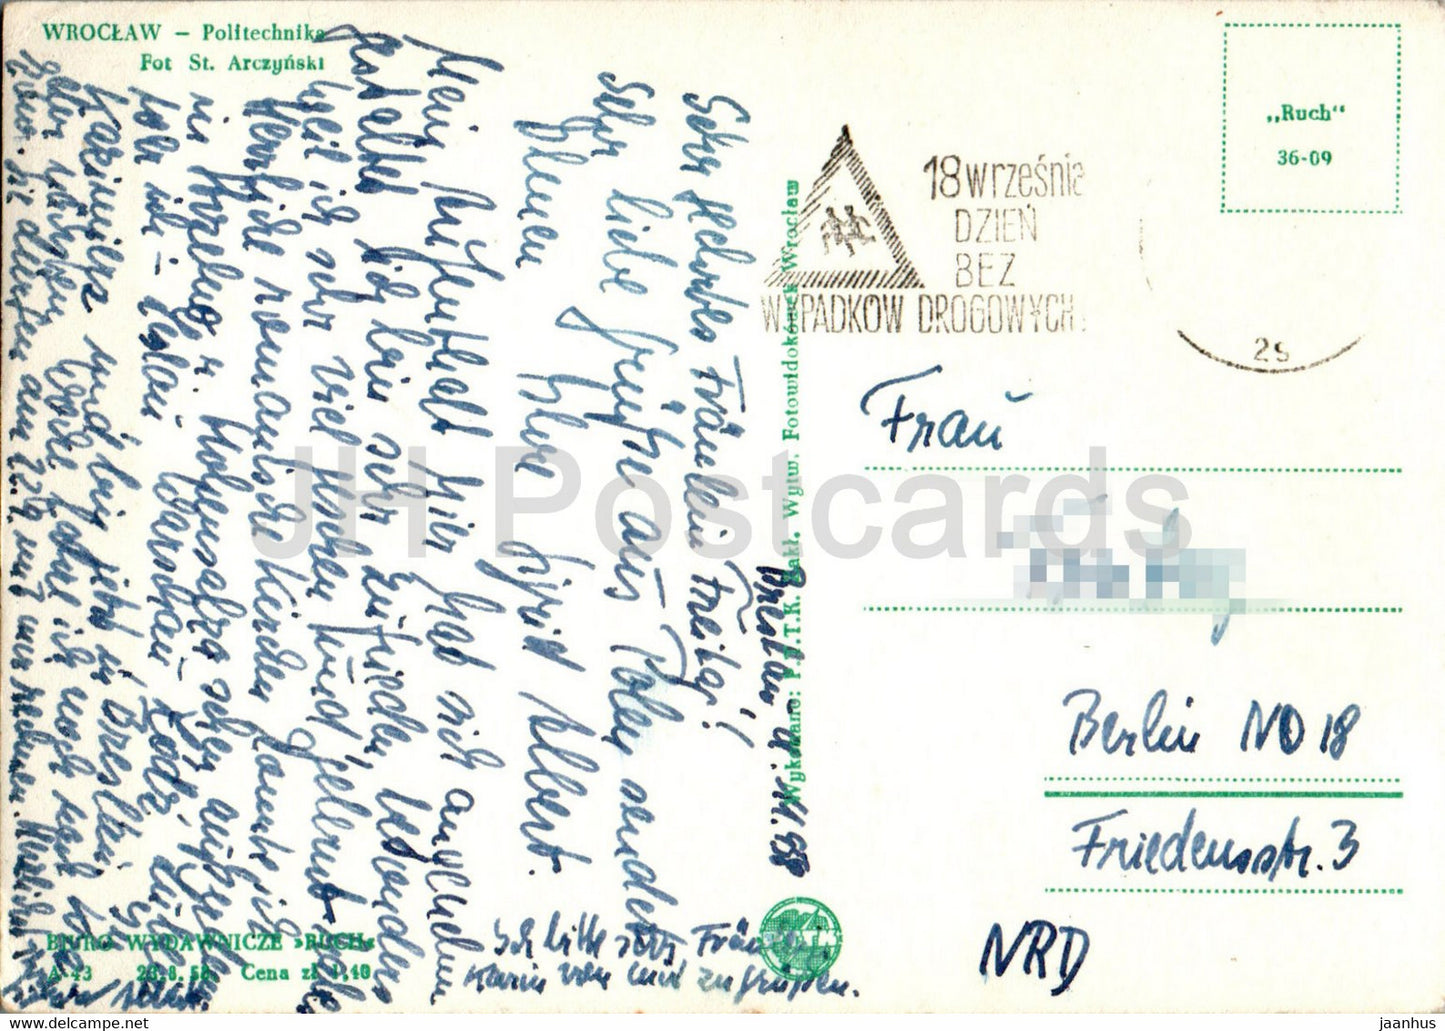 Breslau - Politechnika - Polytechnische Schule - alte Postkarte - 1958 - Polen - gebraucht